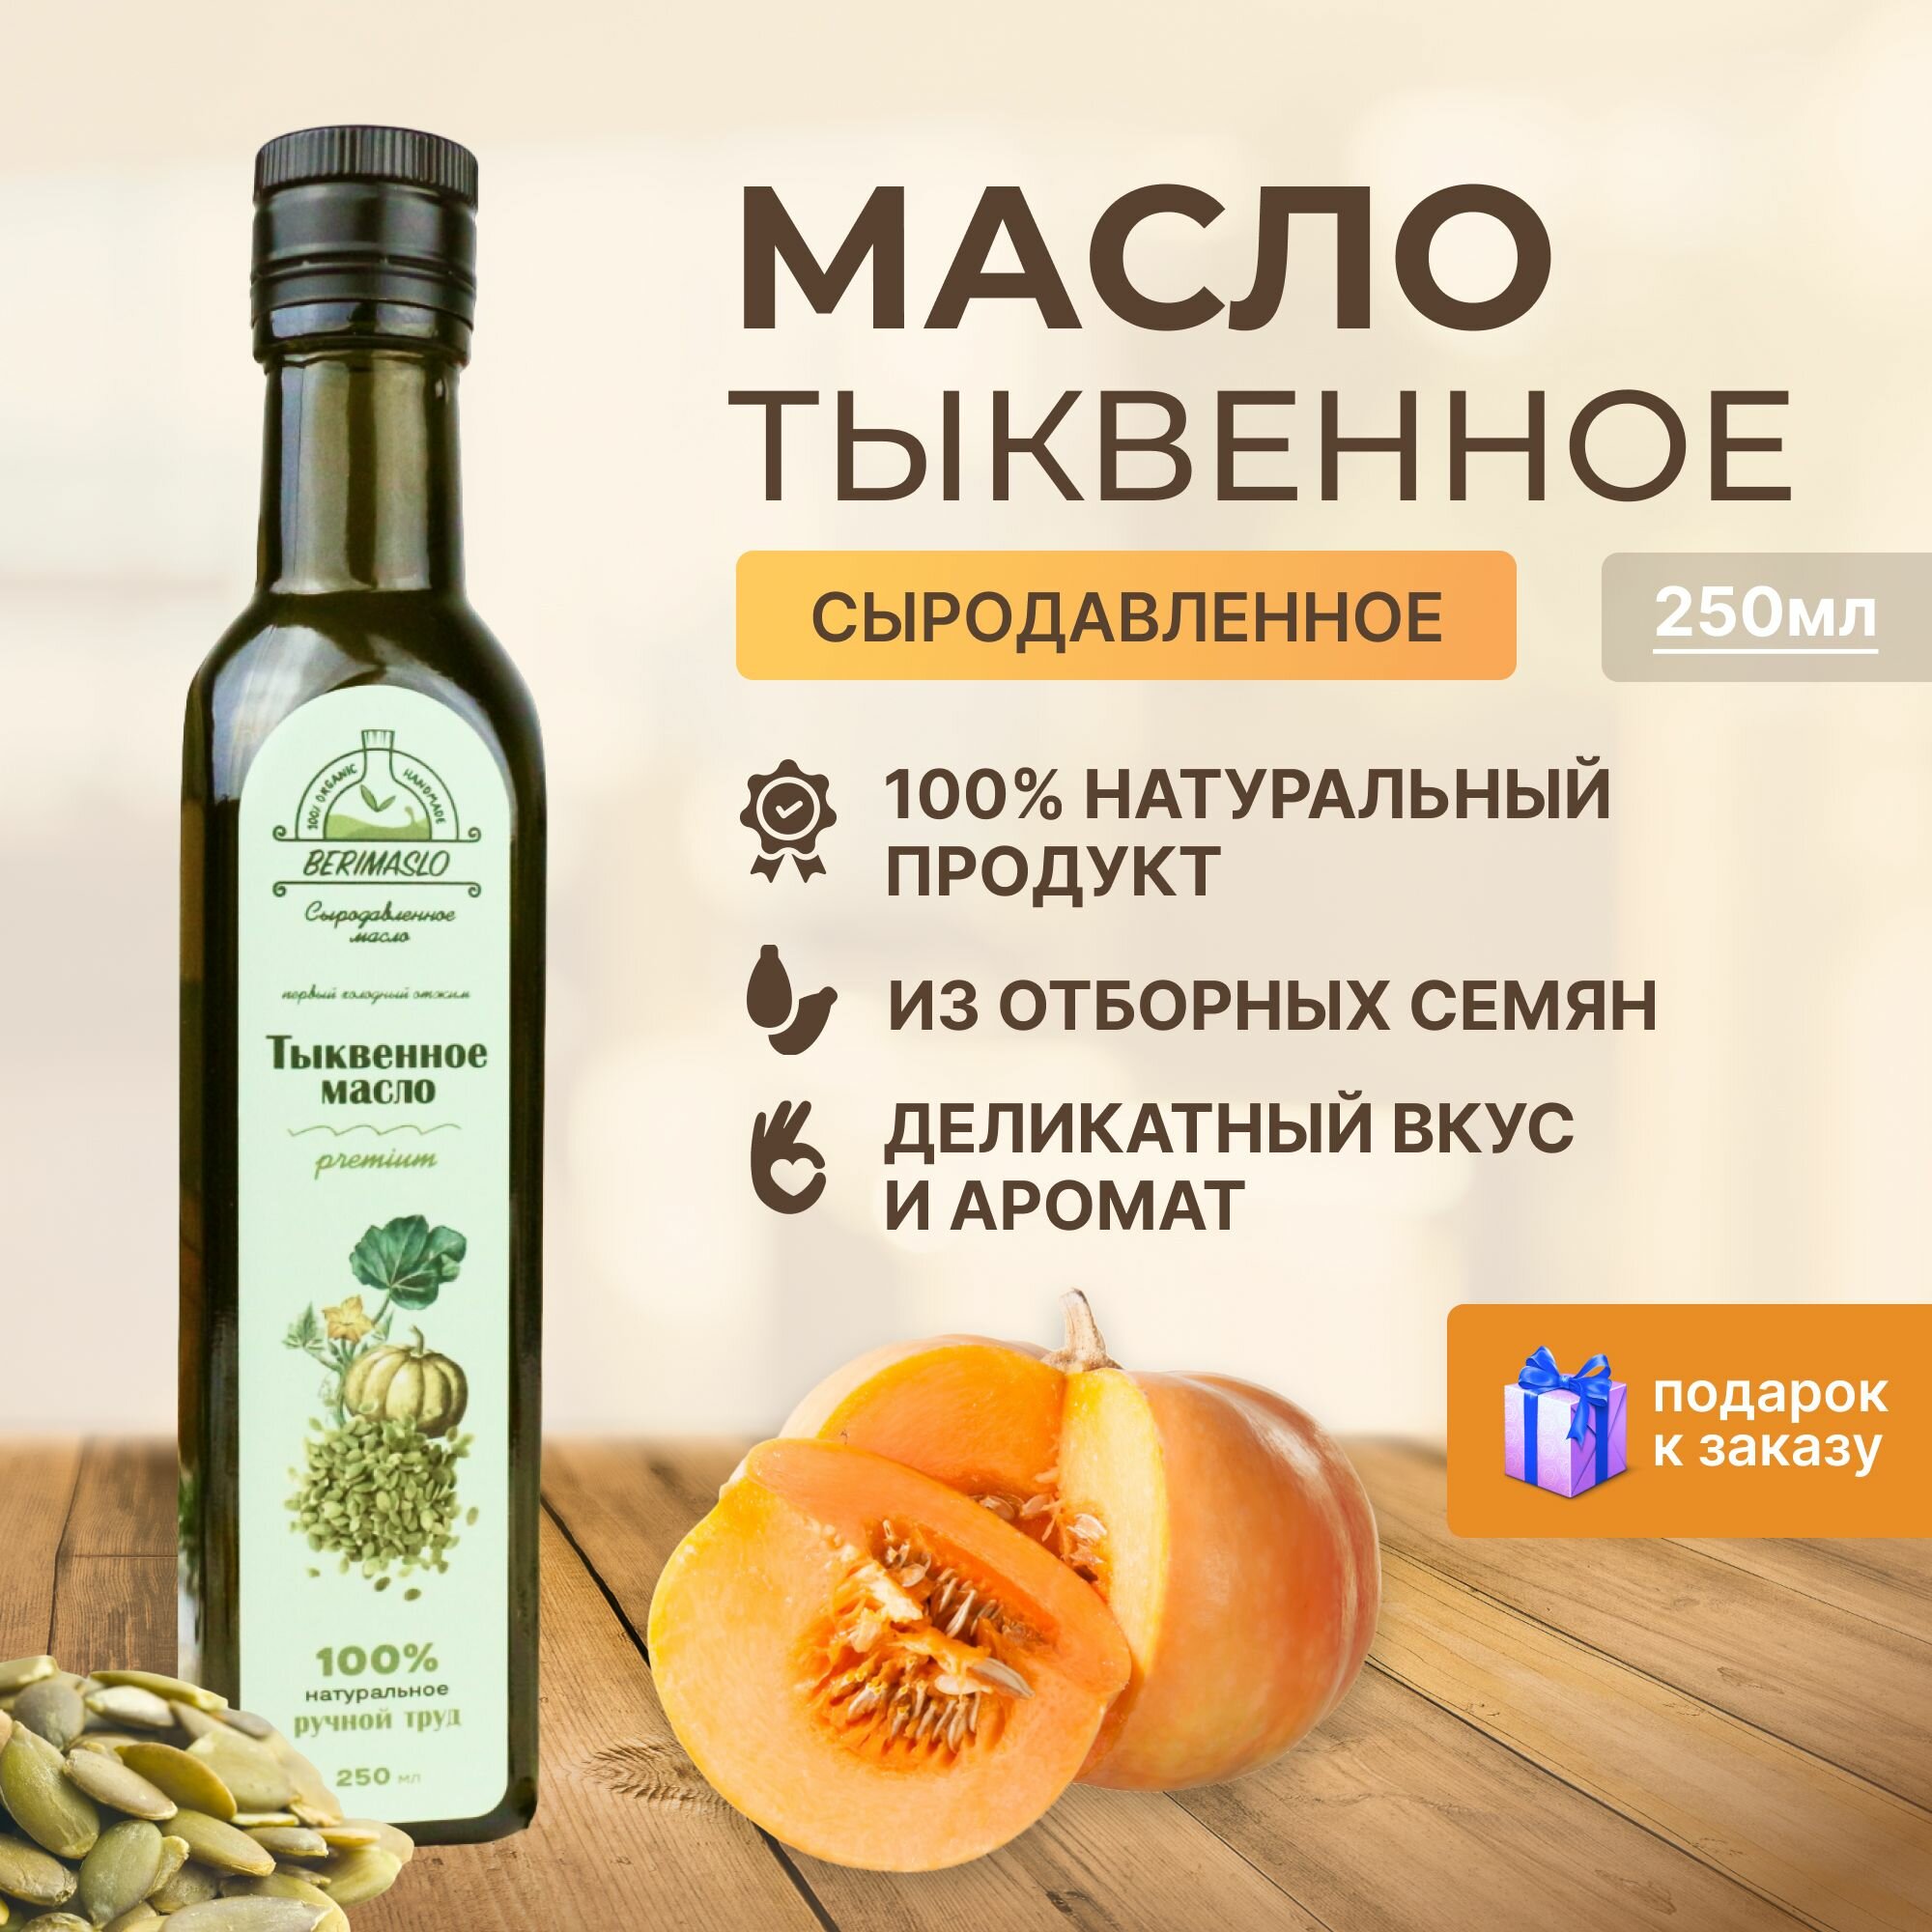 Натуральное сыродавленное тыквенное масло на дубовом прессе 250 мл Berimaslo (из штирийских семян тыквы, холодного отжима, в темном стекле) натуральный суперфуд для иммунита и похудения